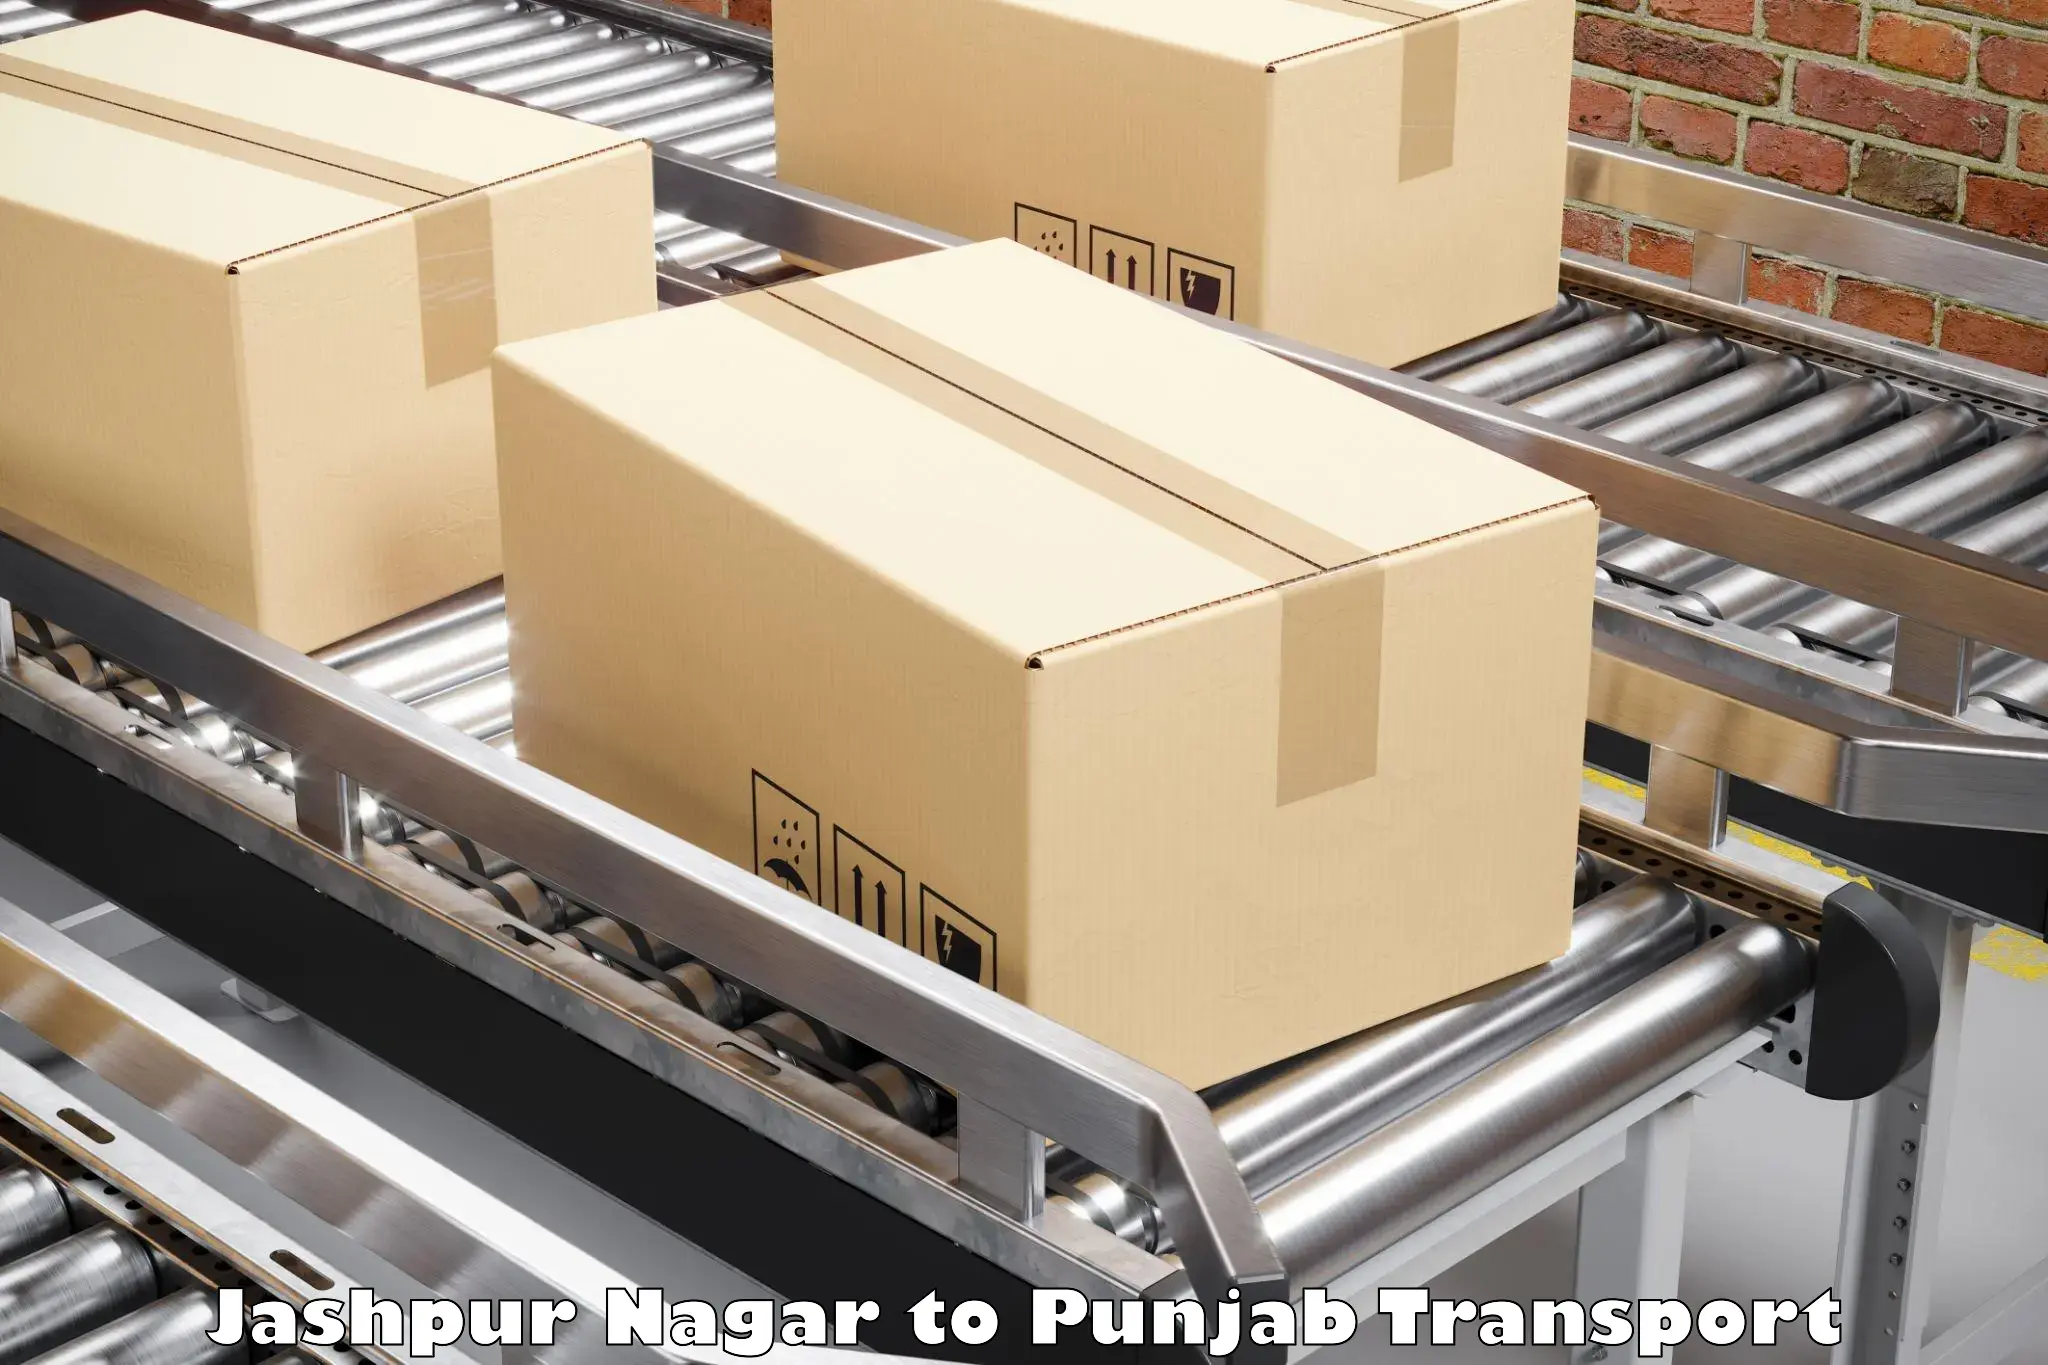 Pick up transport service Jashpur Nagar to Nawanshahr